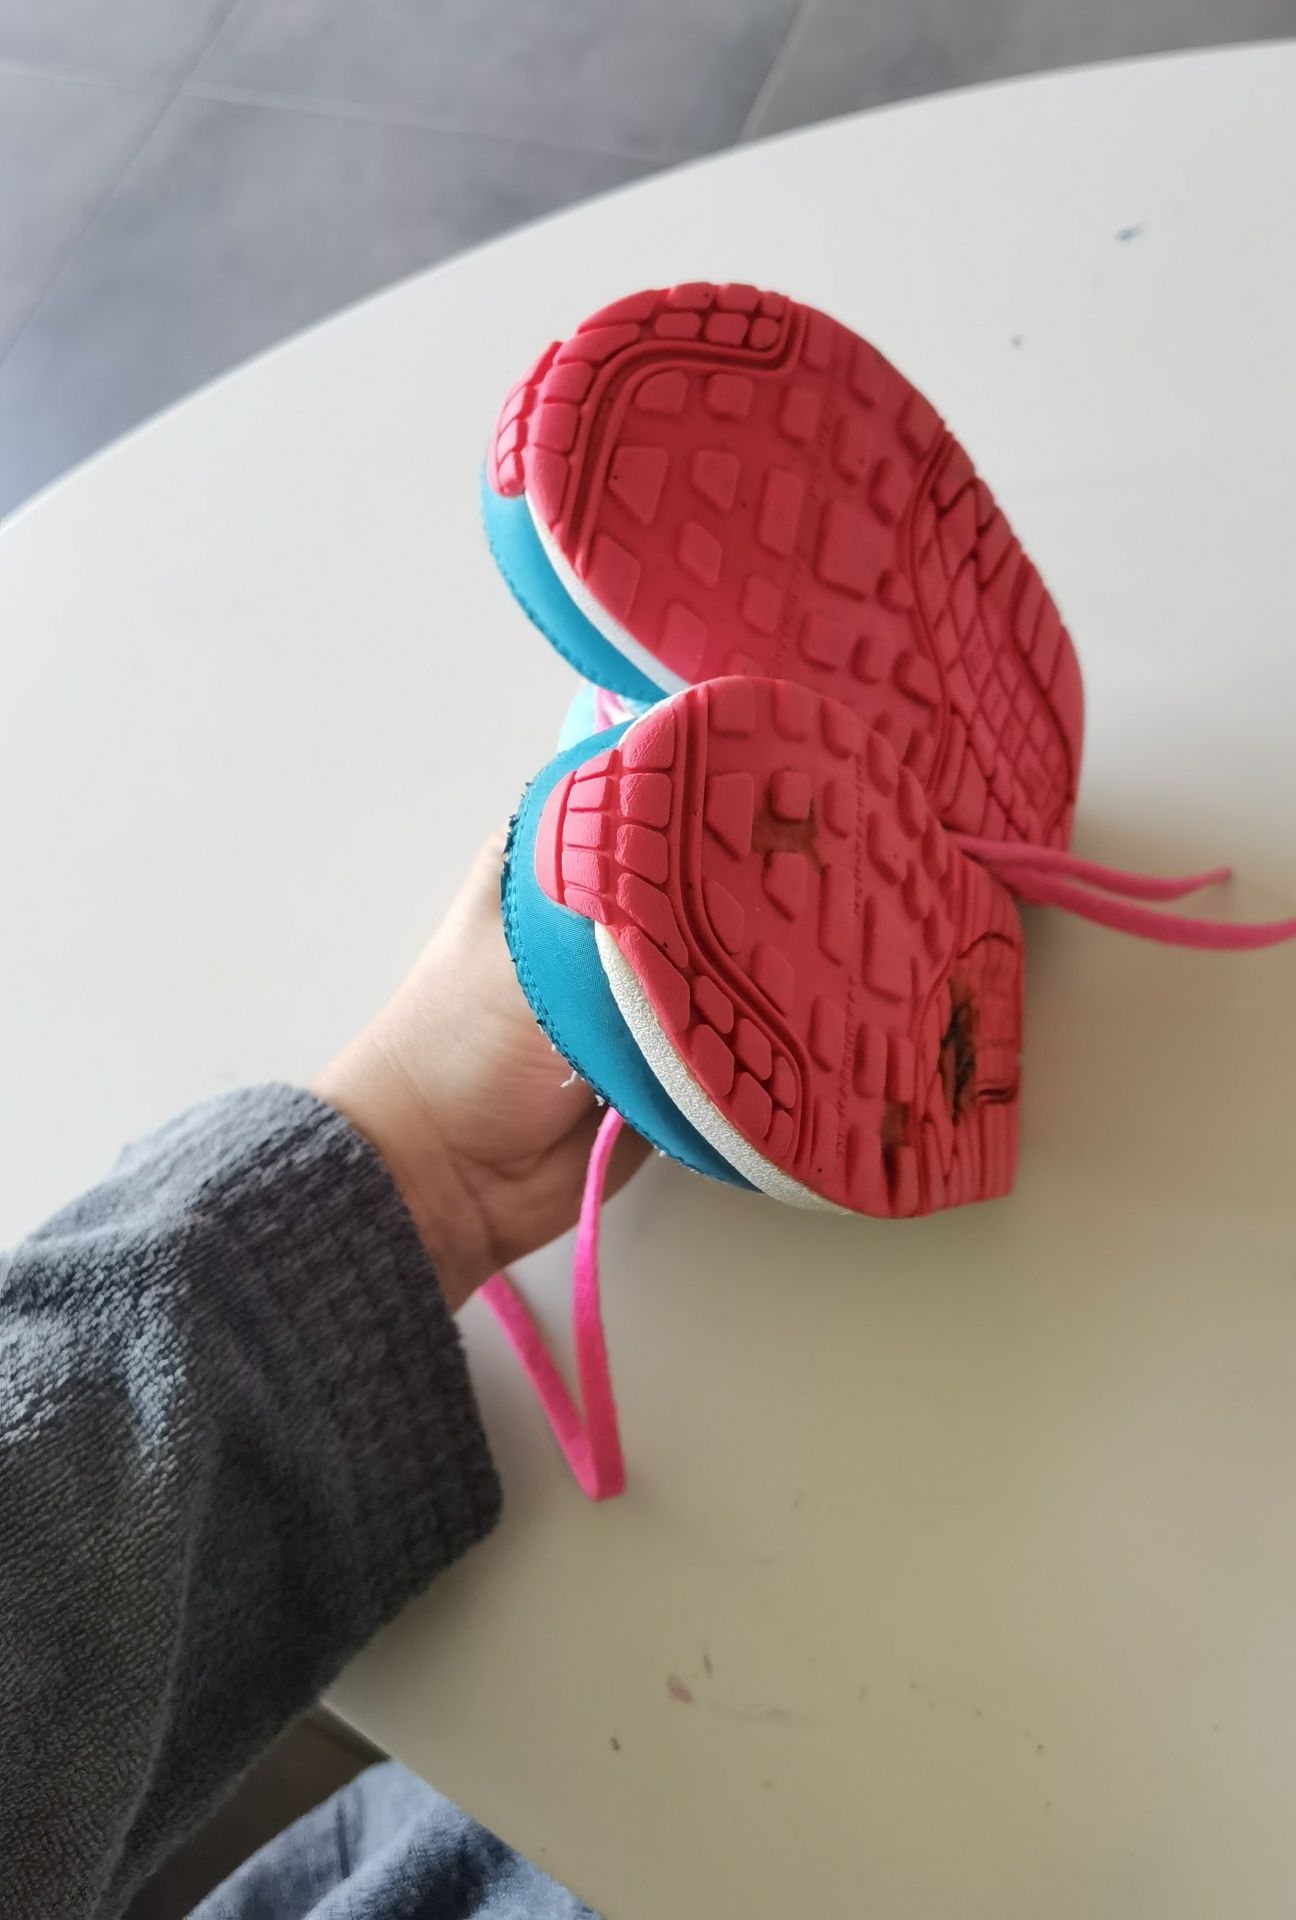 Nike Air Max размер 27 детски маратонки унисекс момиче момче